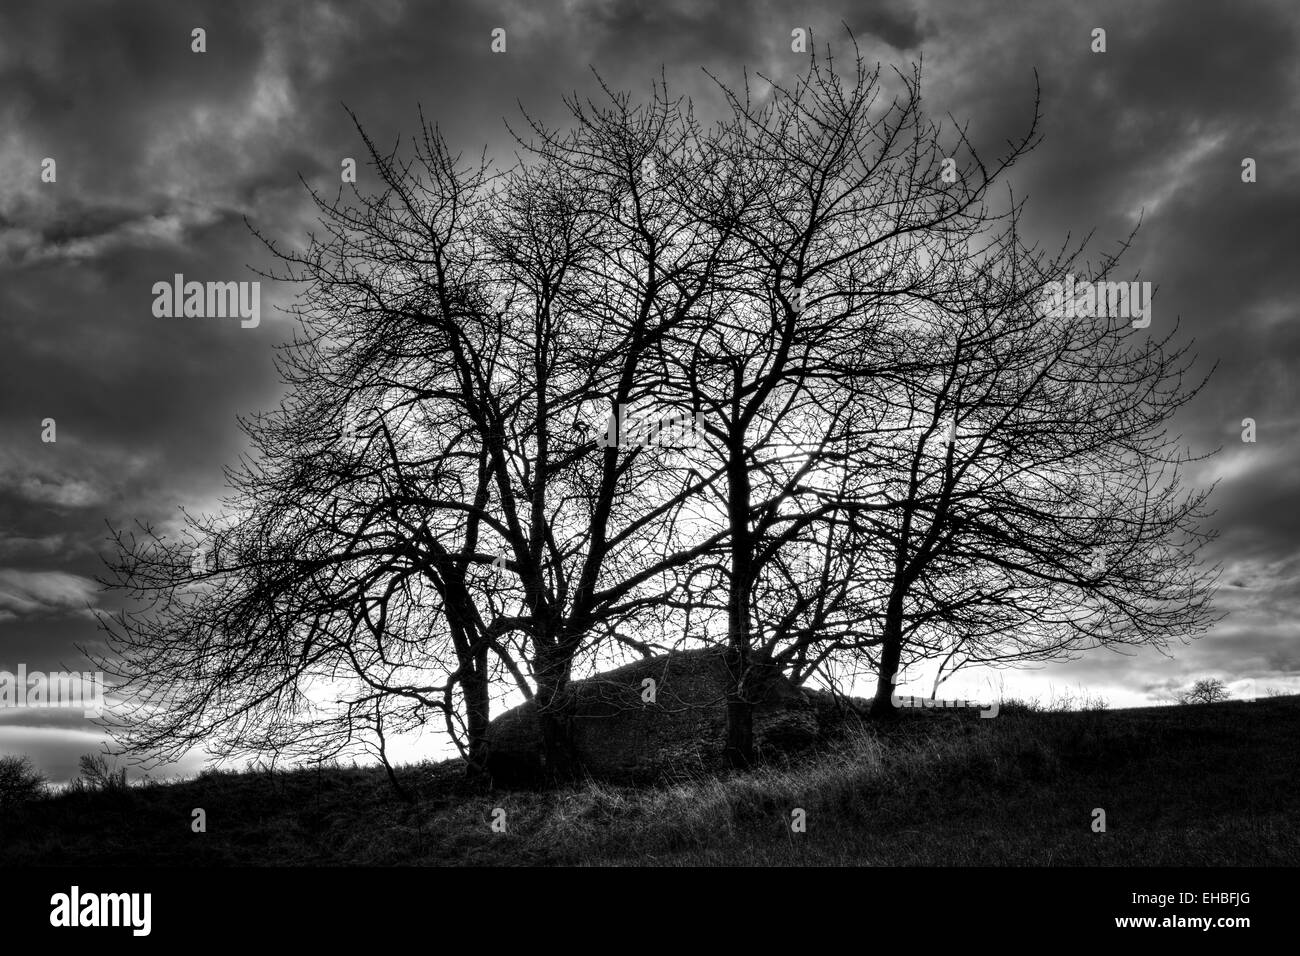 Mystische Monolith versteckt unter Bäumen vor der Sturm B&W Fotografie Stockfoto